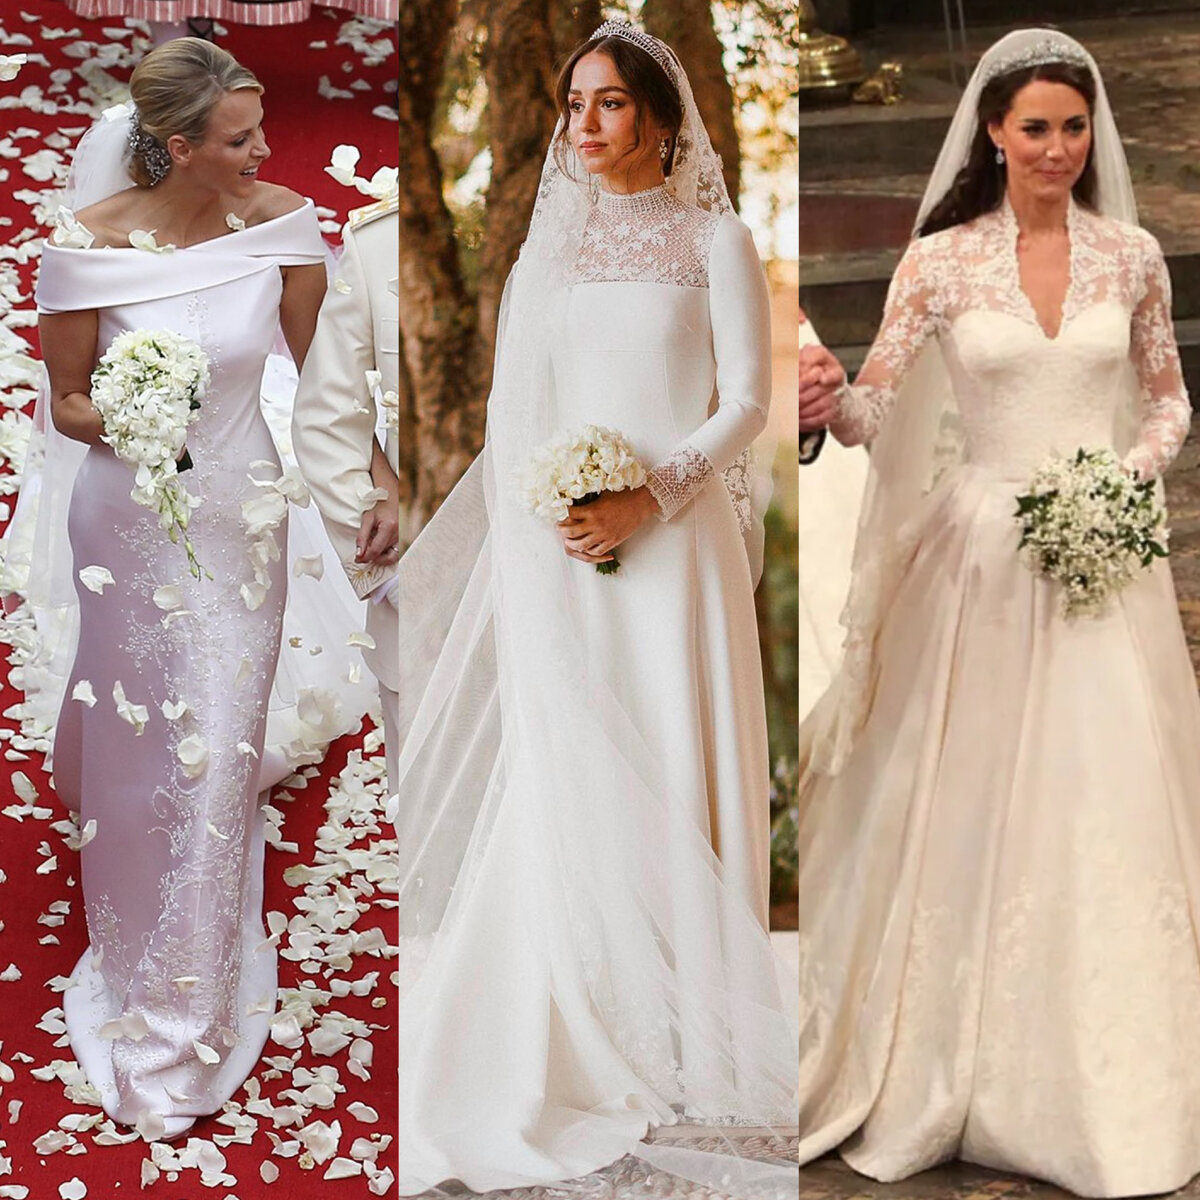  Сказочные свадебные платья королевских особ очаровывают поклонников моды по всему миру и излучают чистую романтику.